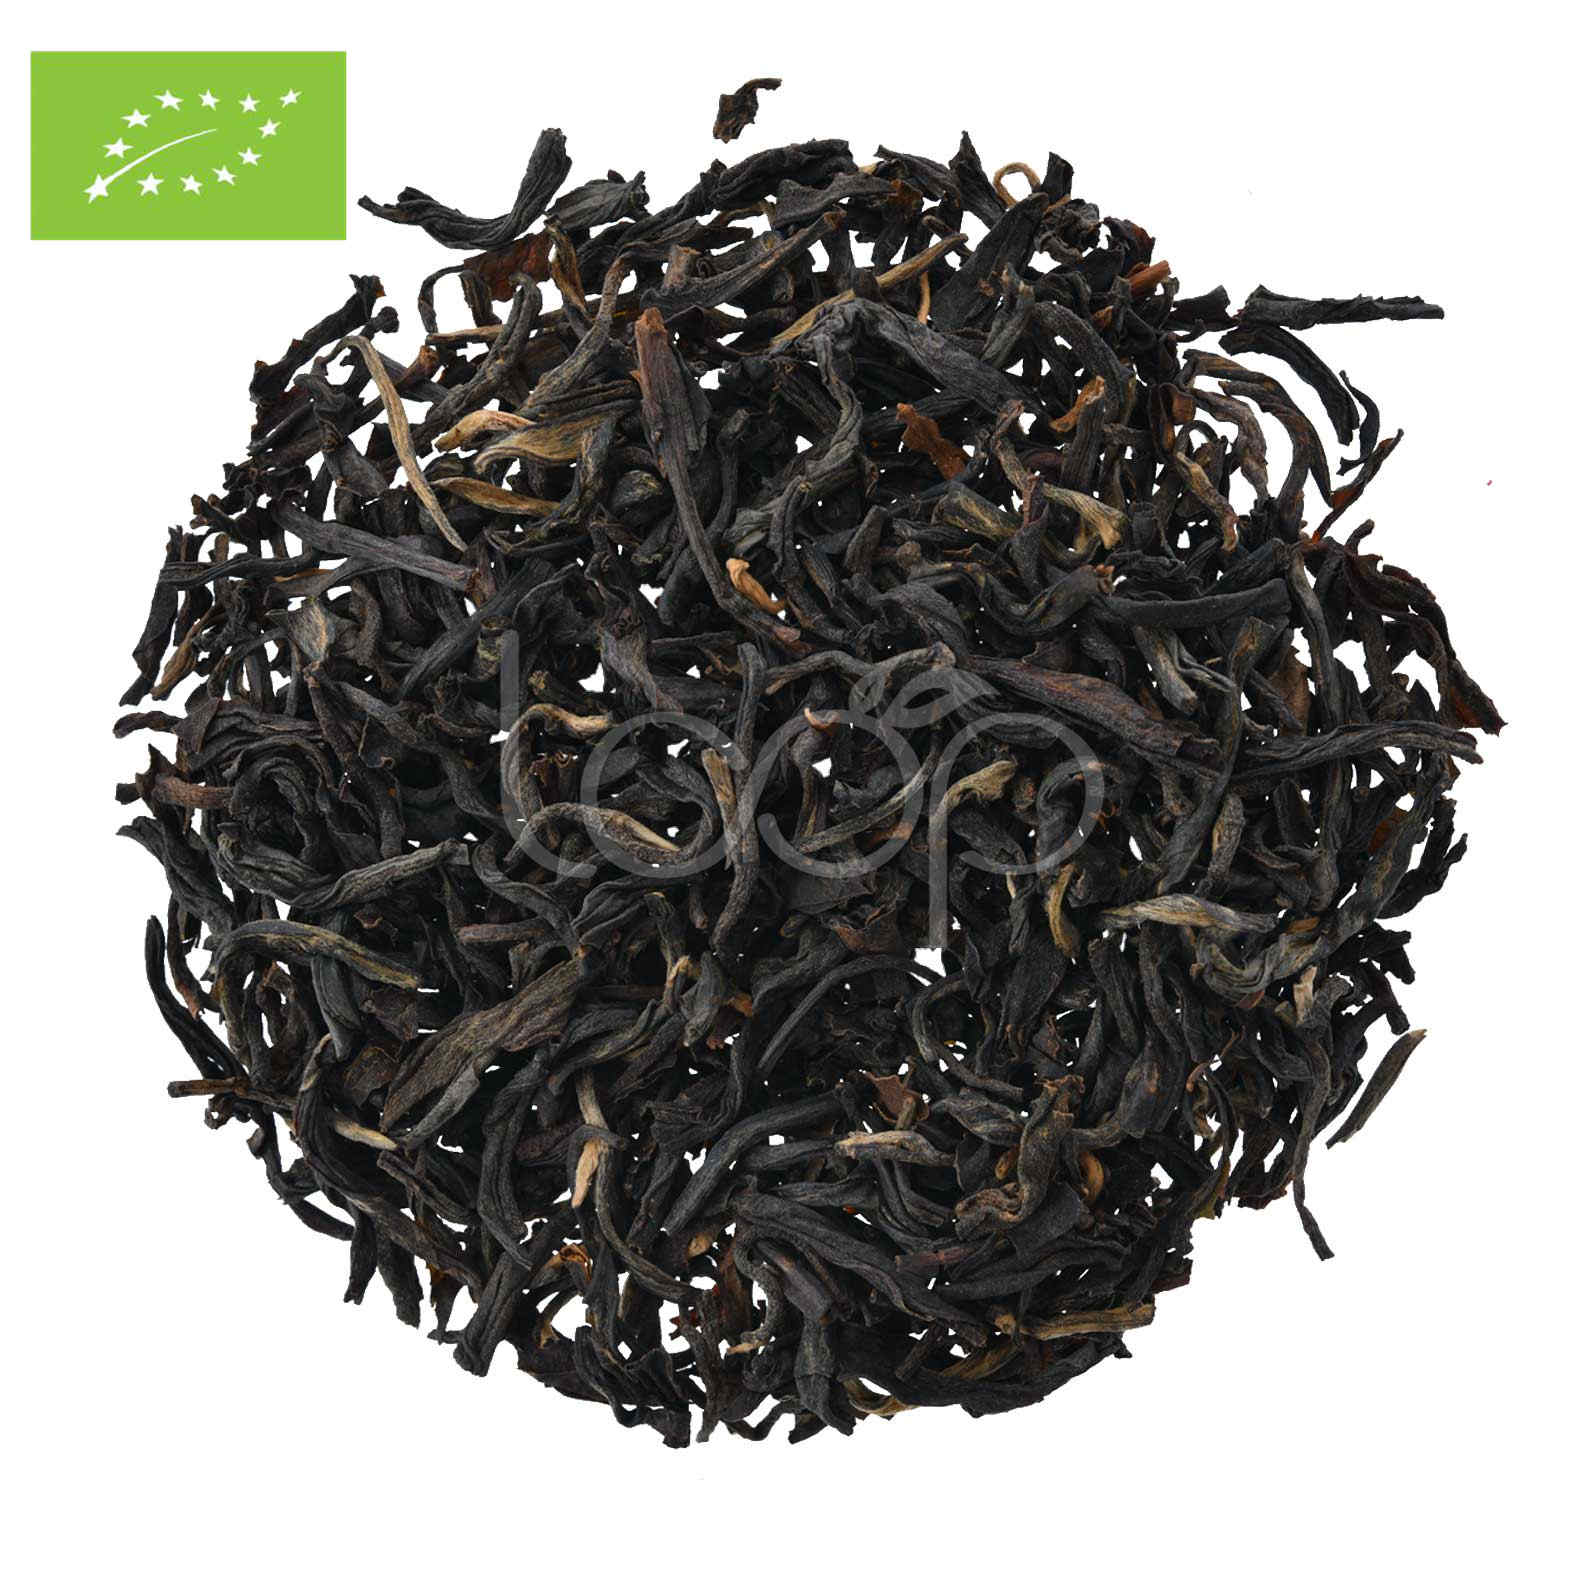 OEM/ODM Supplier Simple Truth Organic Chai Black Tea - China Yunnan Black Tea Dian Hong #5 – Goodtea